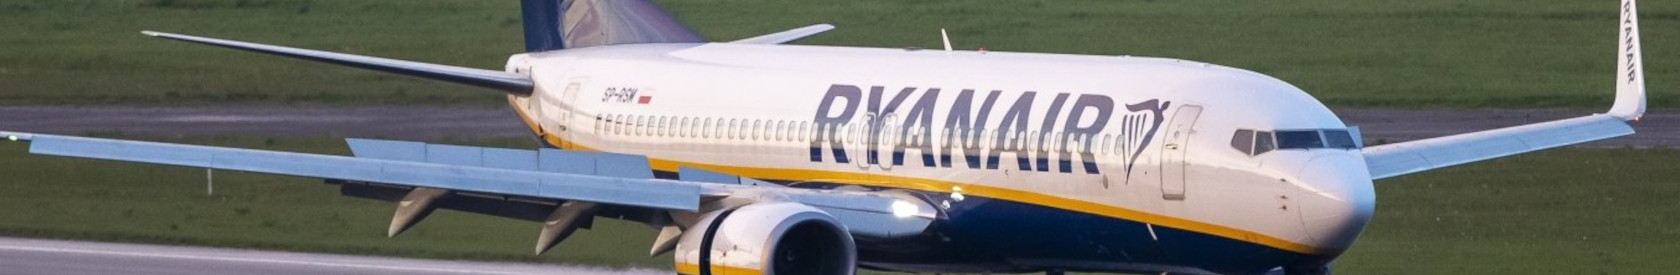 Die ICAO betrachtet die erzwungene außerplanmäßige Landung eines RYANAIR-Fluges als einen Akt der illegalen Einmischung der belarussischen Regierung in die Aktivitäten der Zivilluftfahrt